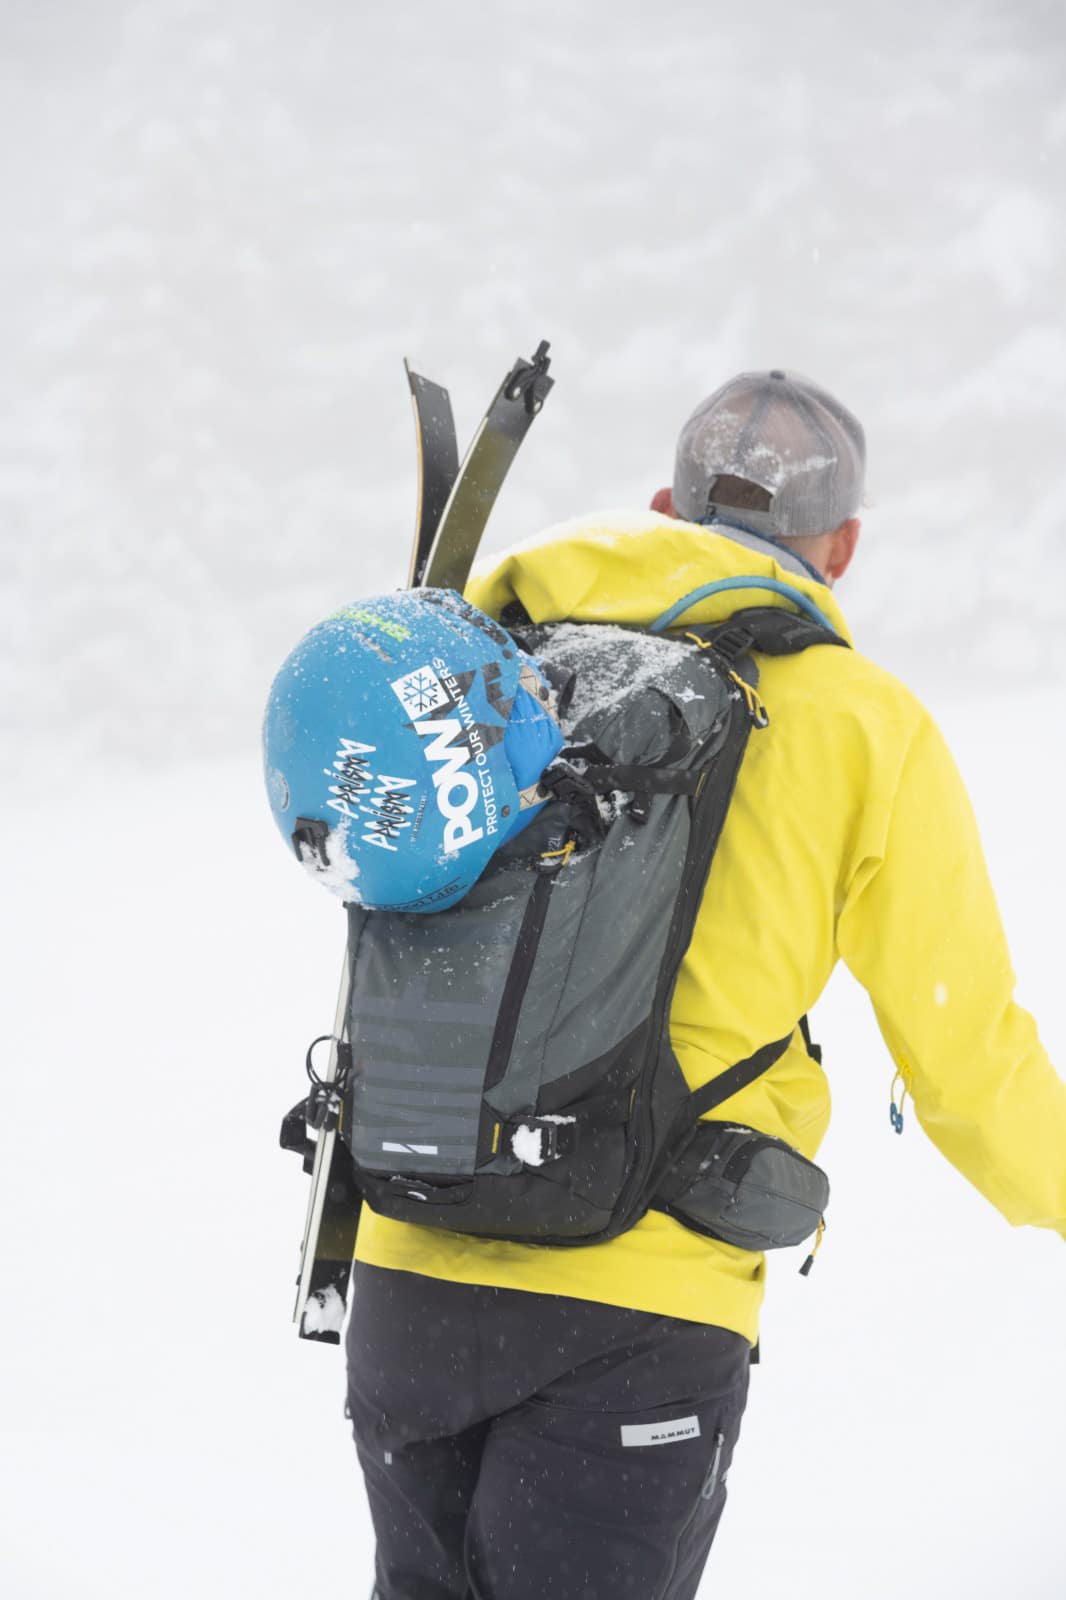 Test du sac à dos Impetro Gear Ski pack